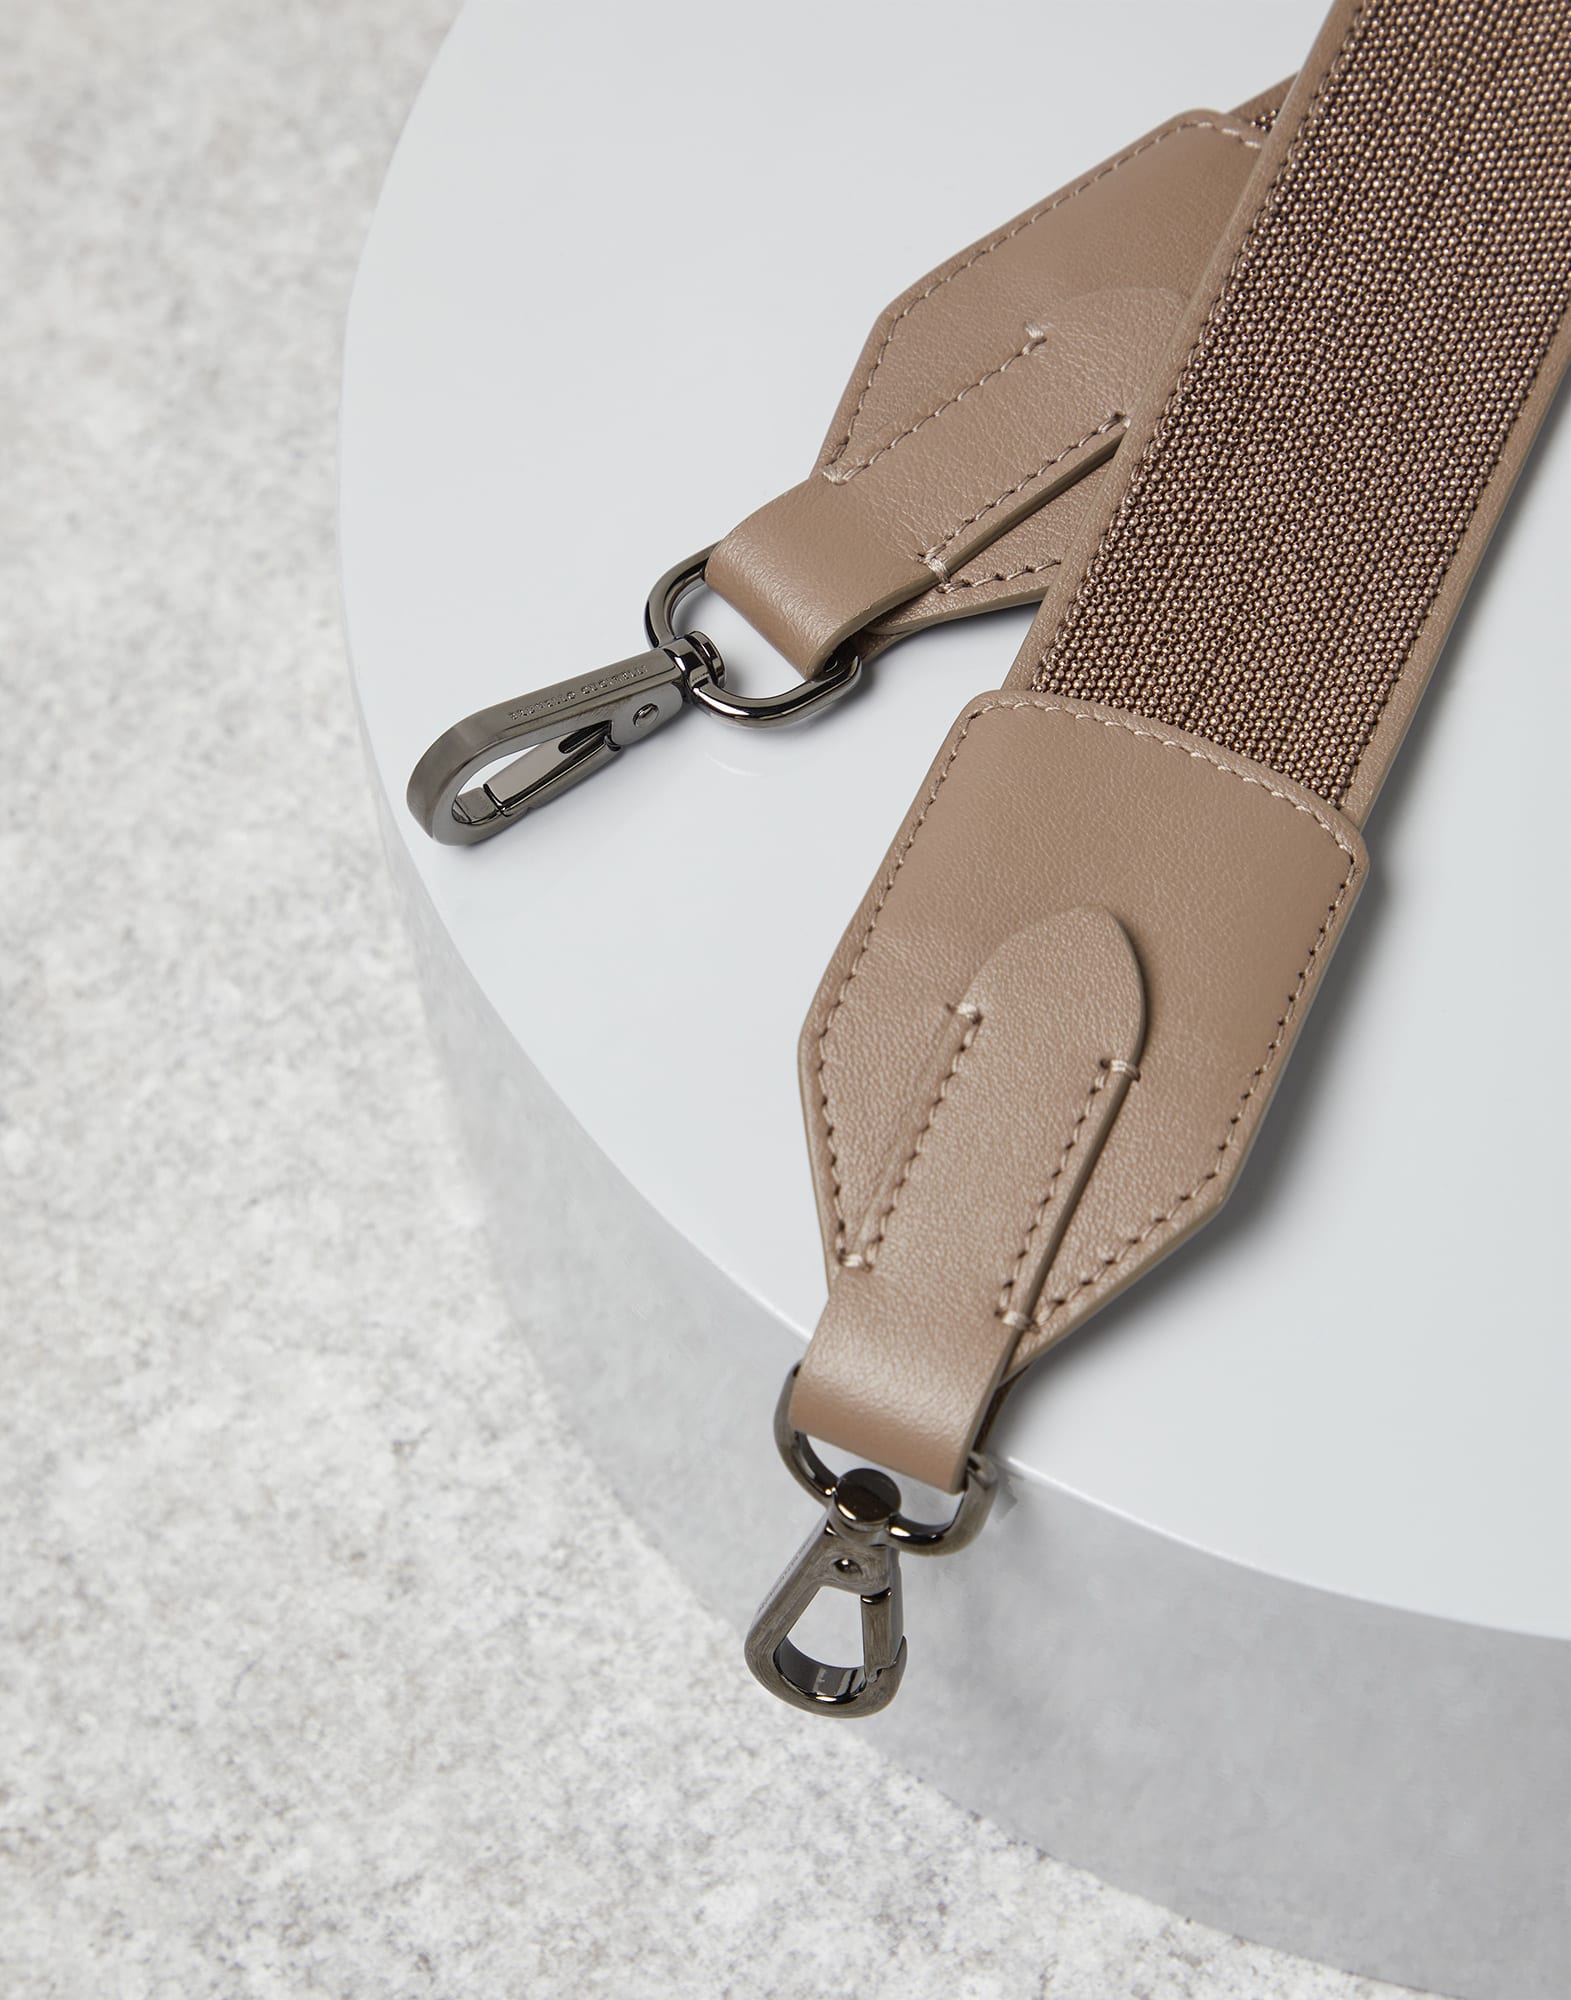 Brunello Cucinelli Precious Leather Bag Strap - Farfetch